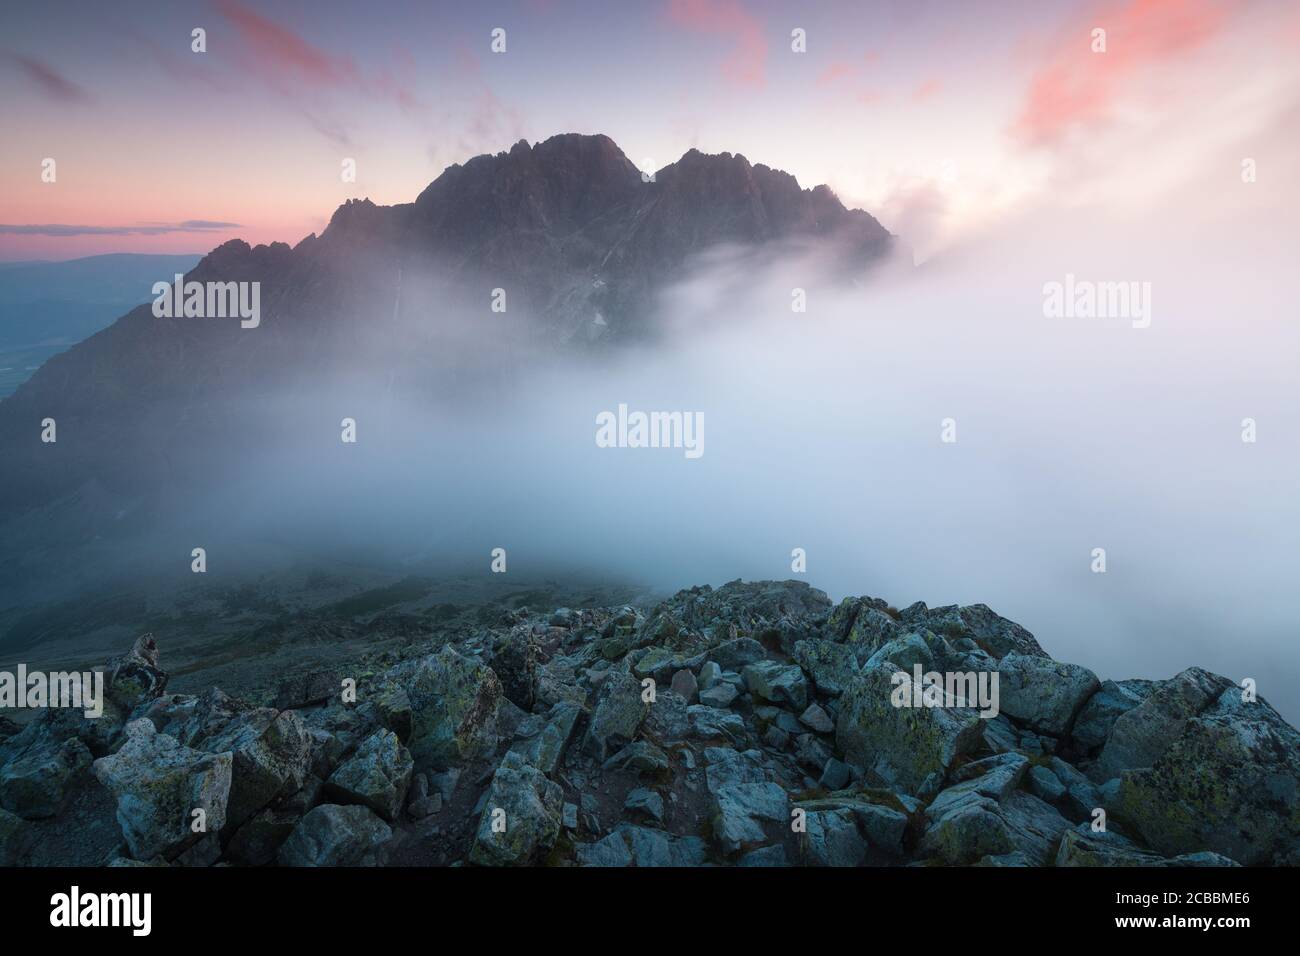 Panorama avec brouillard et montagnes à Banff, en Alberta. Paysage du matin avec une atmosphère brumeuse.magnifique fond de nature. Premier jour d'automne Banque D'Images